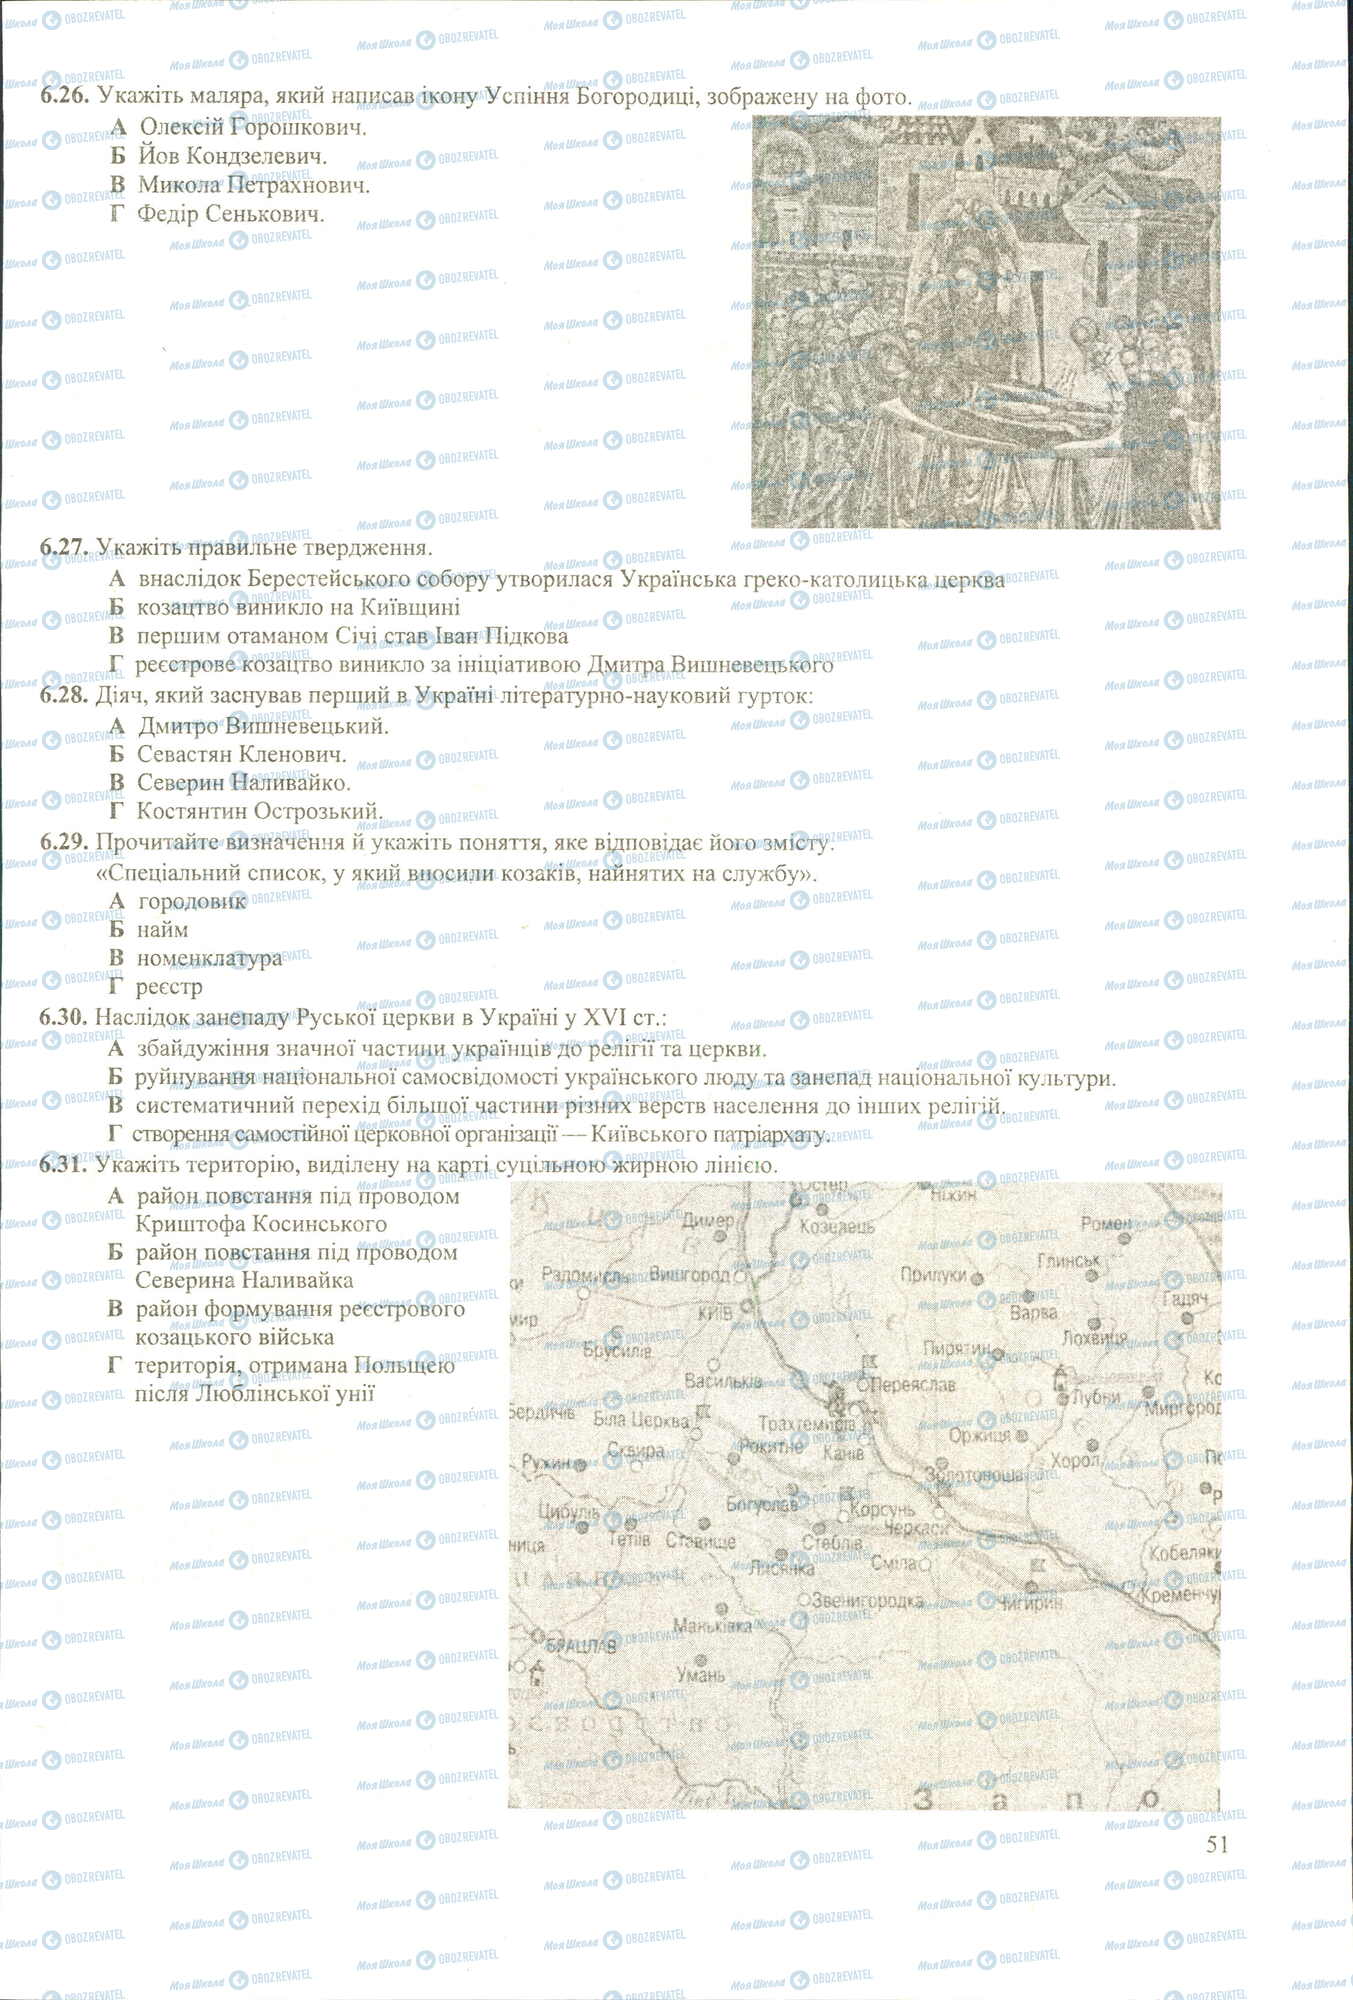 ЗНО История Украины 11 класс страница 6.26-6.31